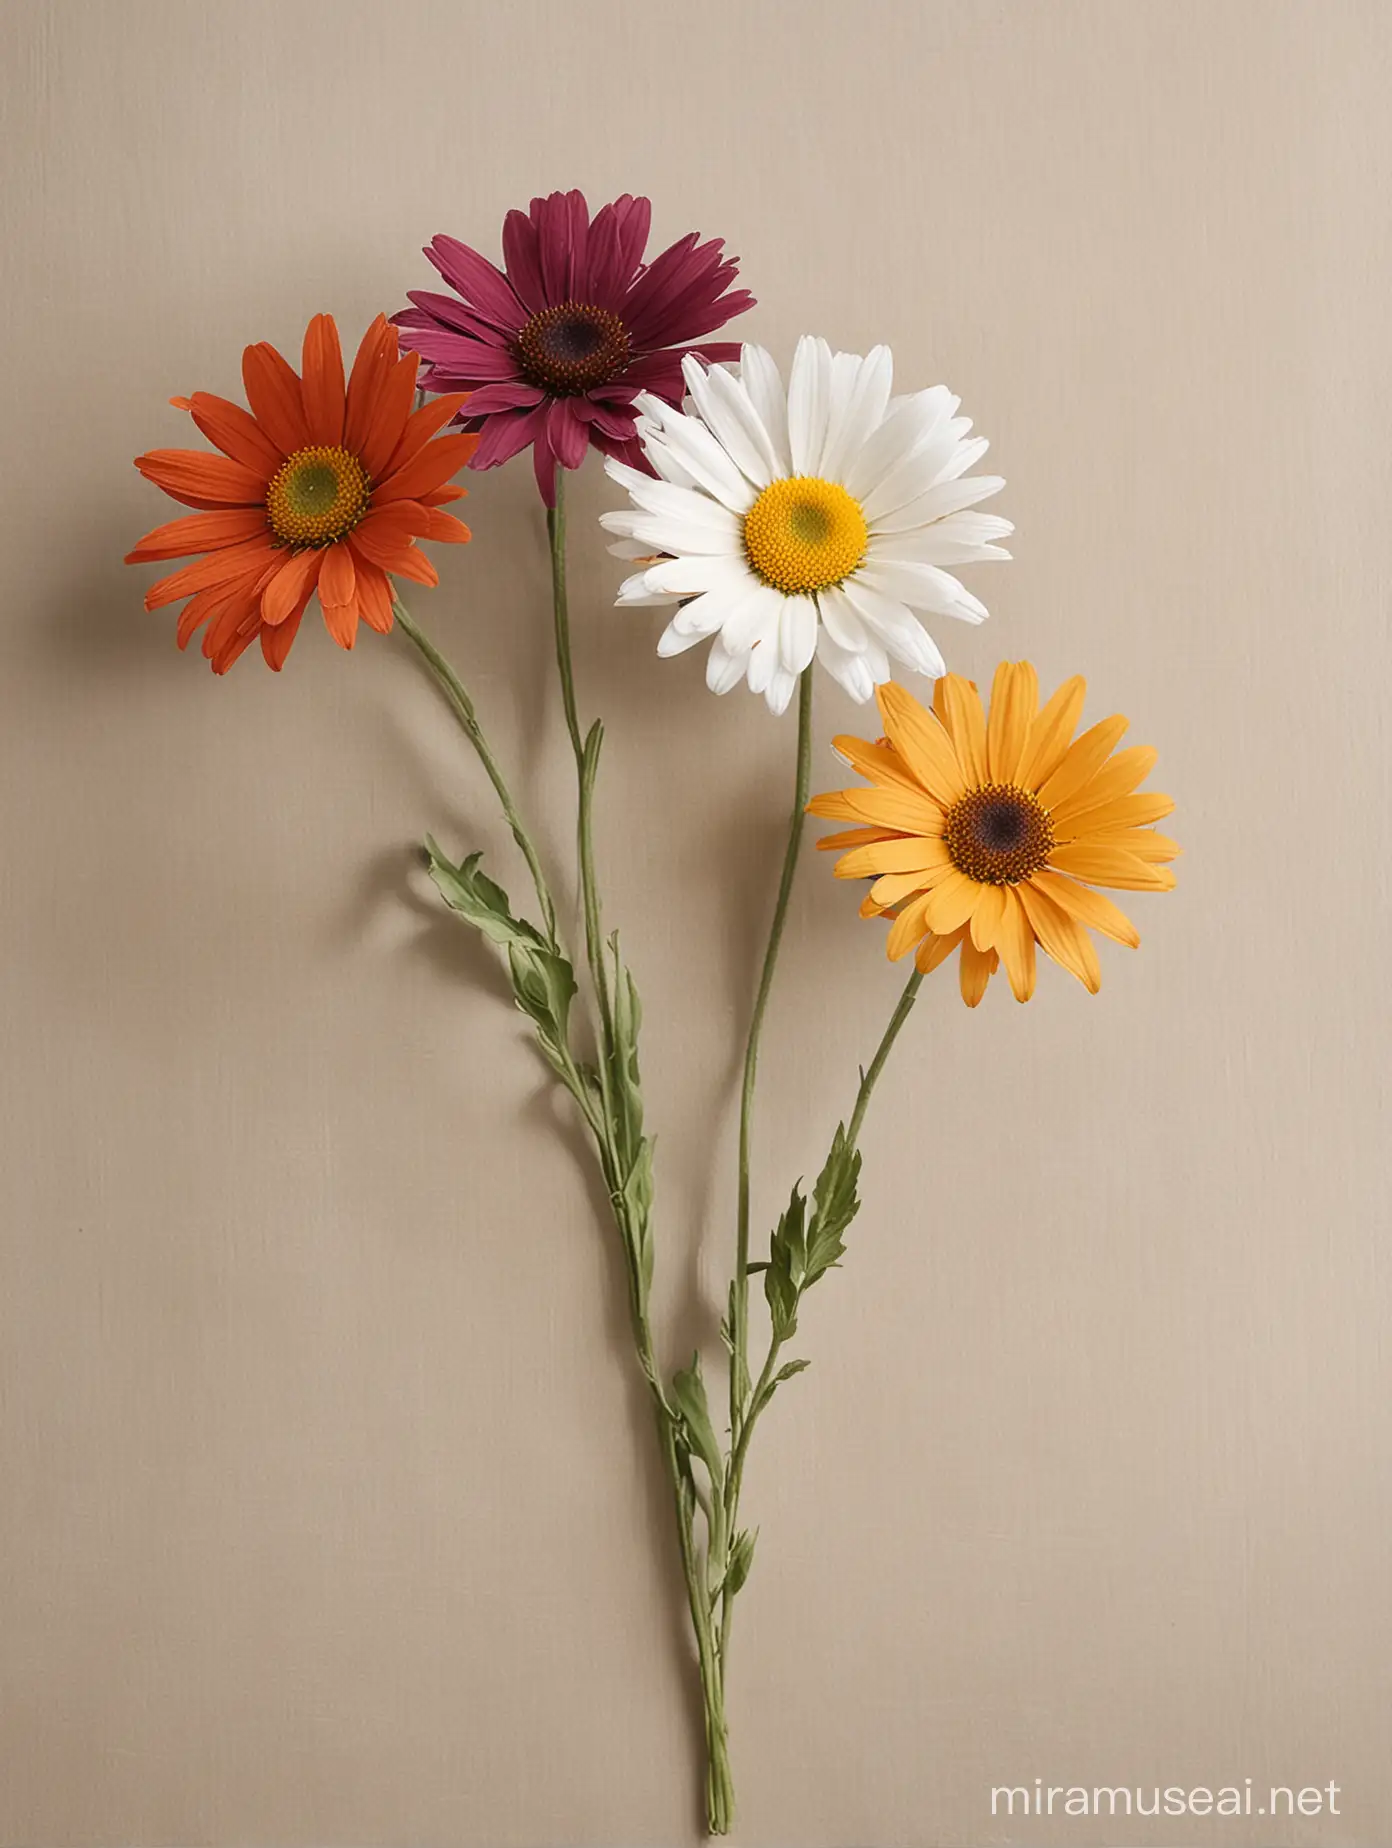 Vibrant MultiColored Daisy in a Stylish Decorative Setting